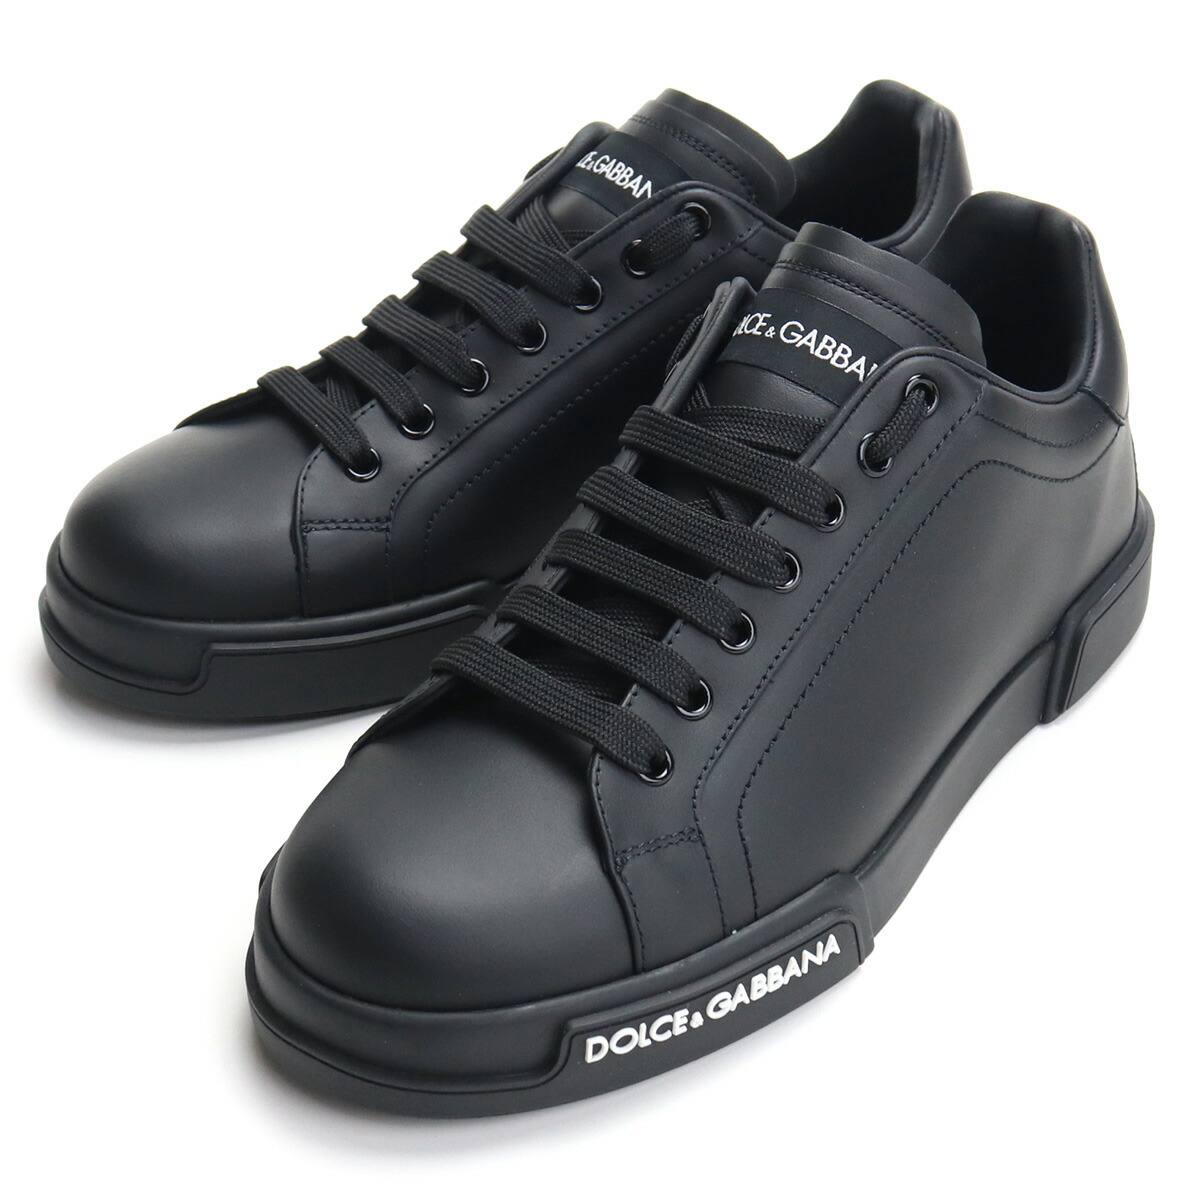 ドルチェ&ガッバーナ DOLCE&GABBANA メンズスニーカー CS1774 AA335 8B956 ブラック bos-26 shoes-01 メンズ